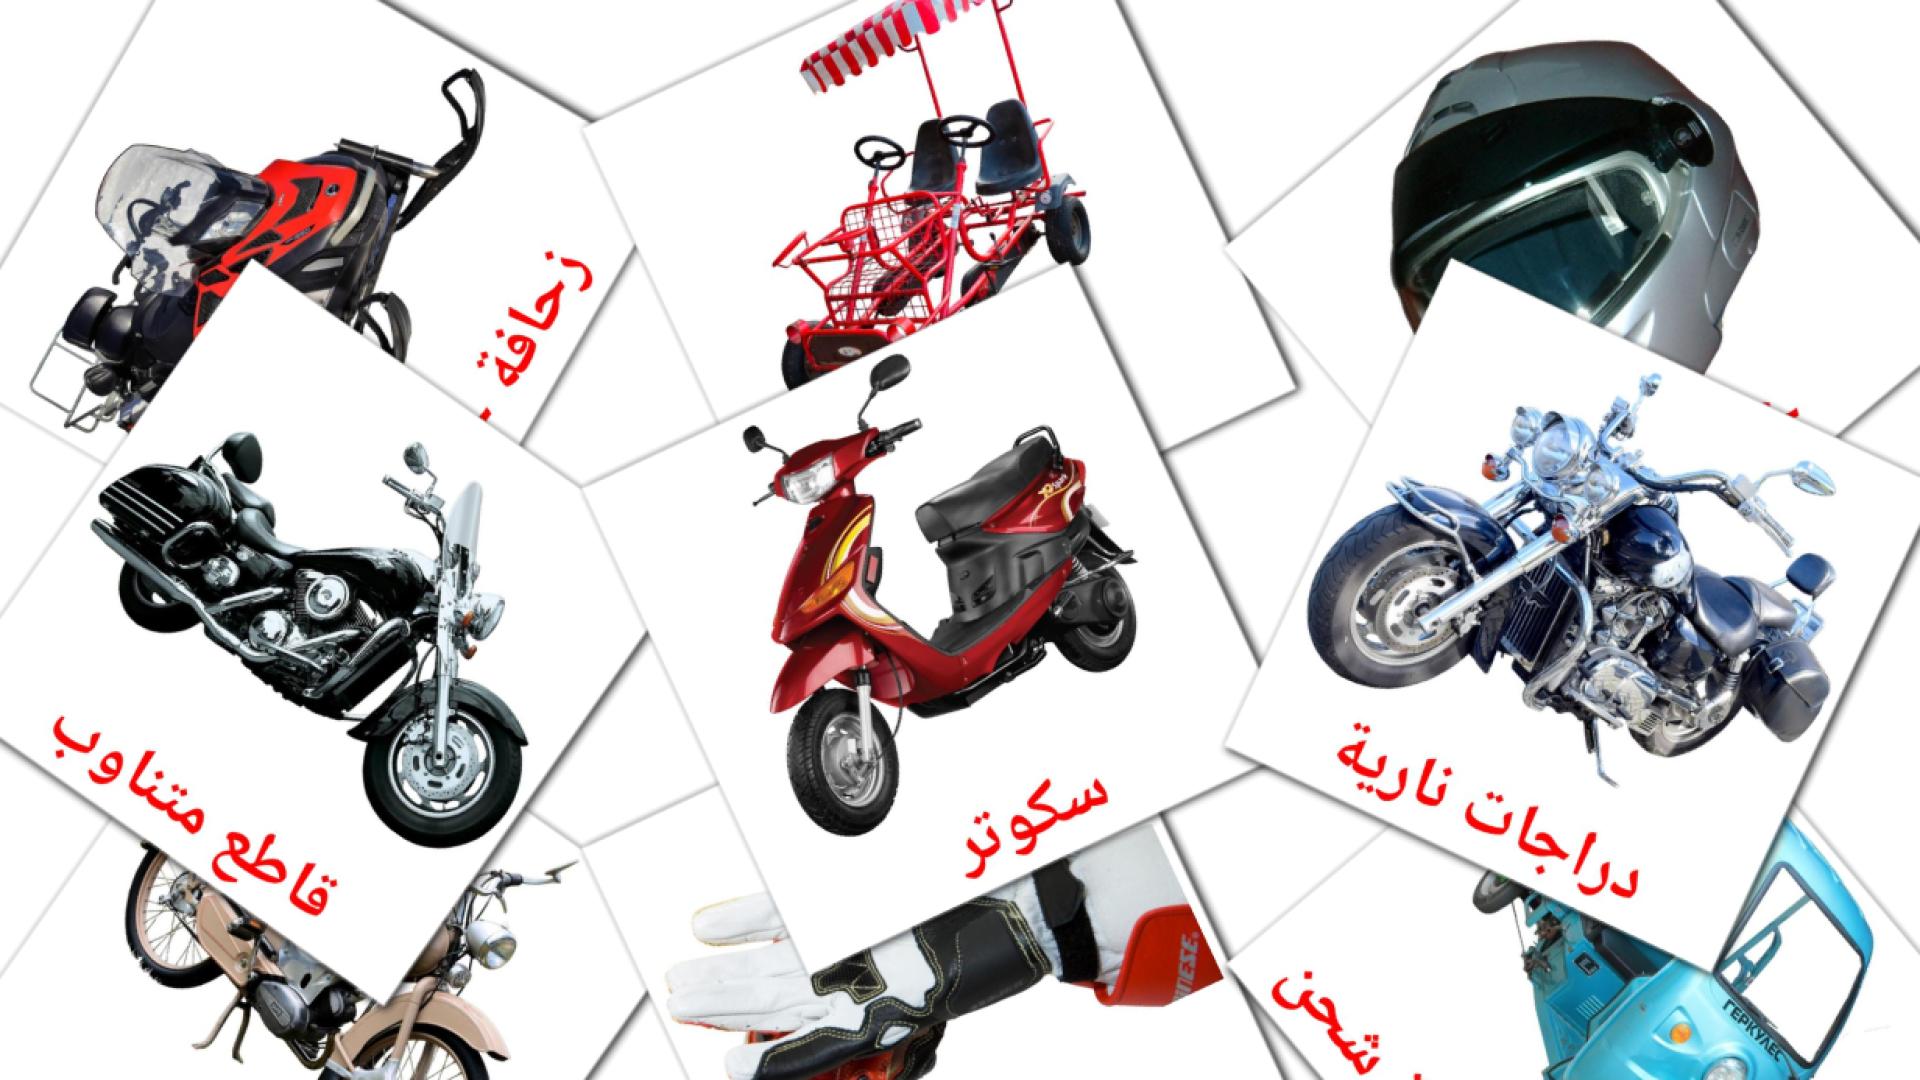 Motorräder - Arabisch Vokabelkarten